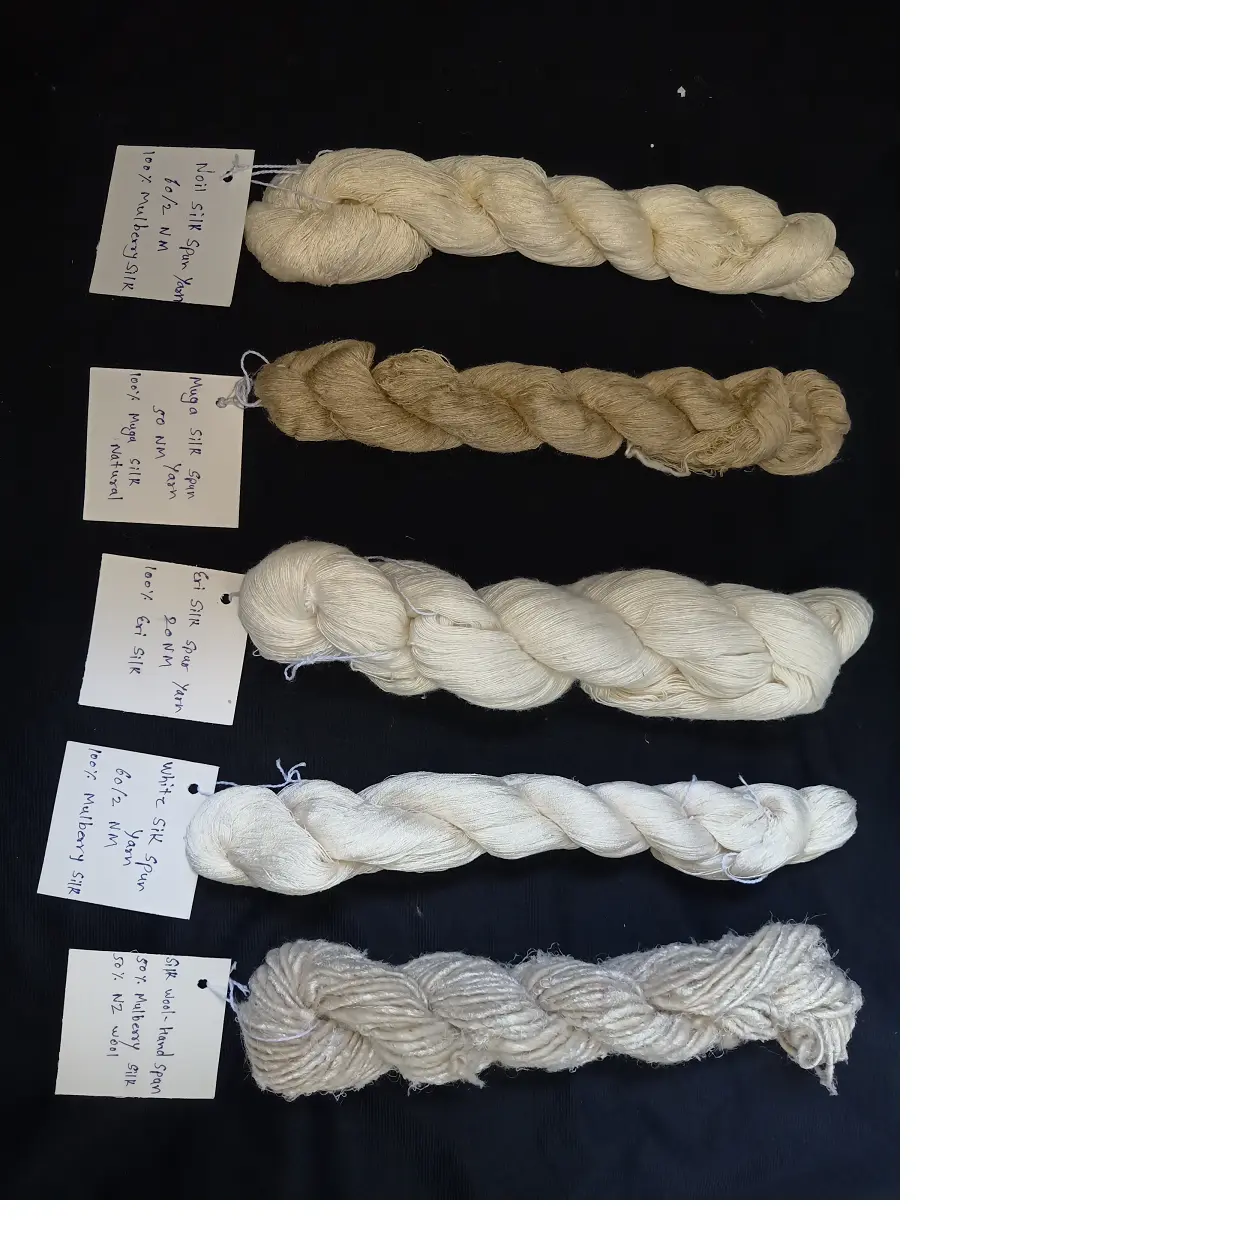 Hilo de seda hecho a medida, muga, noil de seda y mezcla de seda, en varios recuentos para tejedores